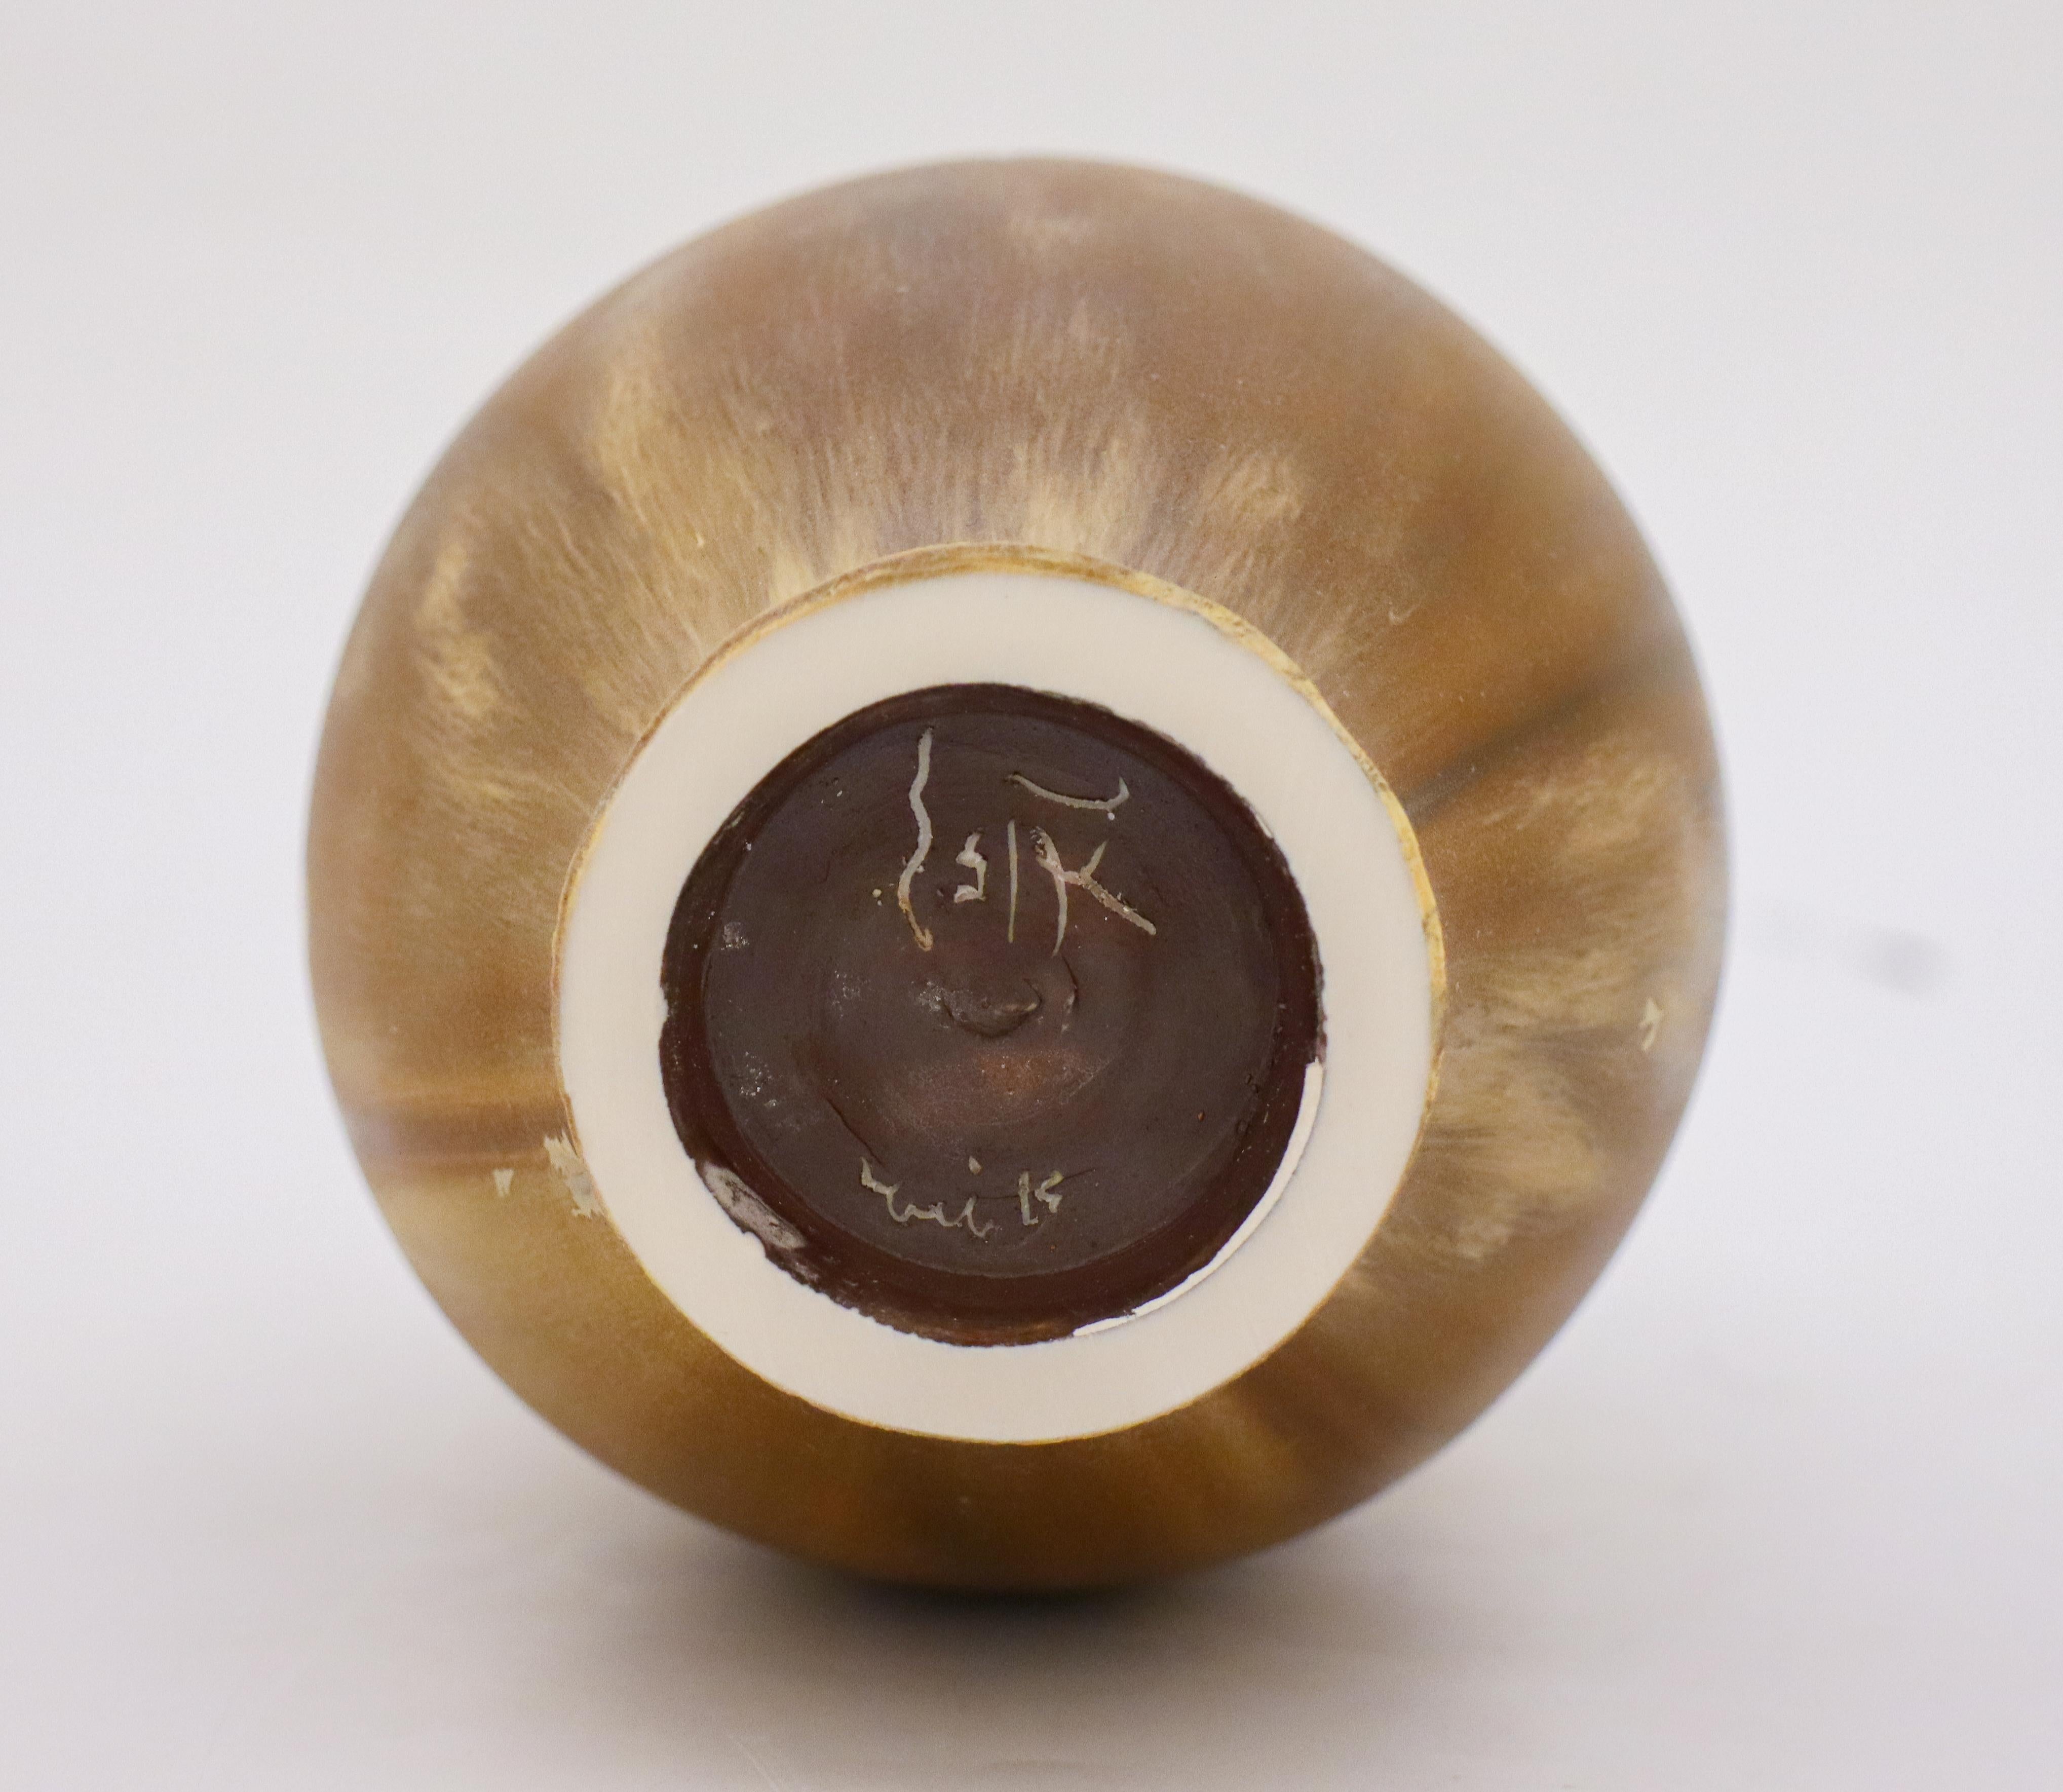 Vase Beige / Brown Crystalline Glaze Isak Isaksson Contemporary Sweden Ceramic 1